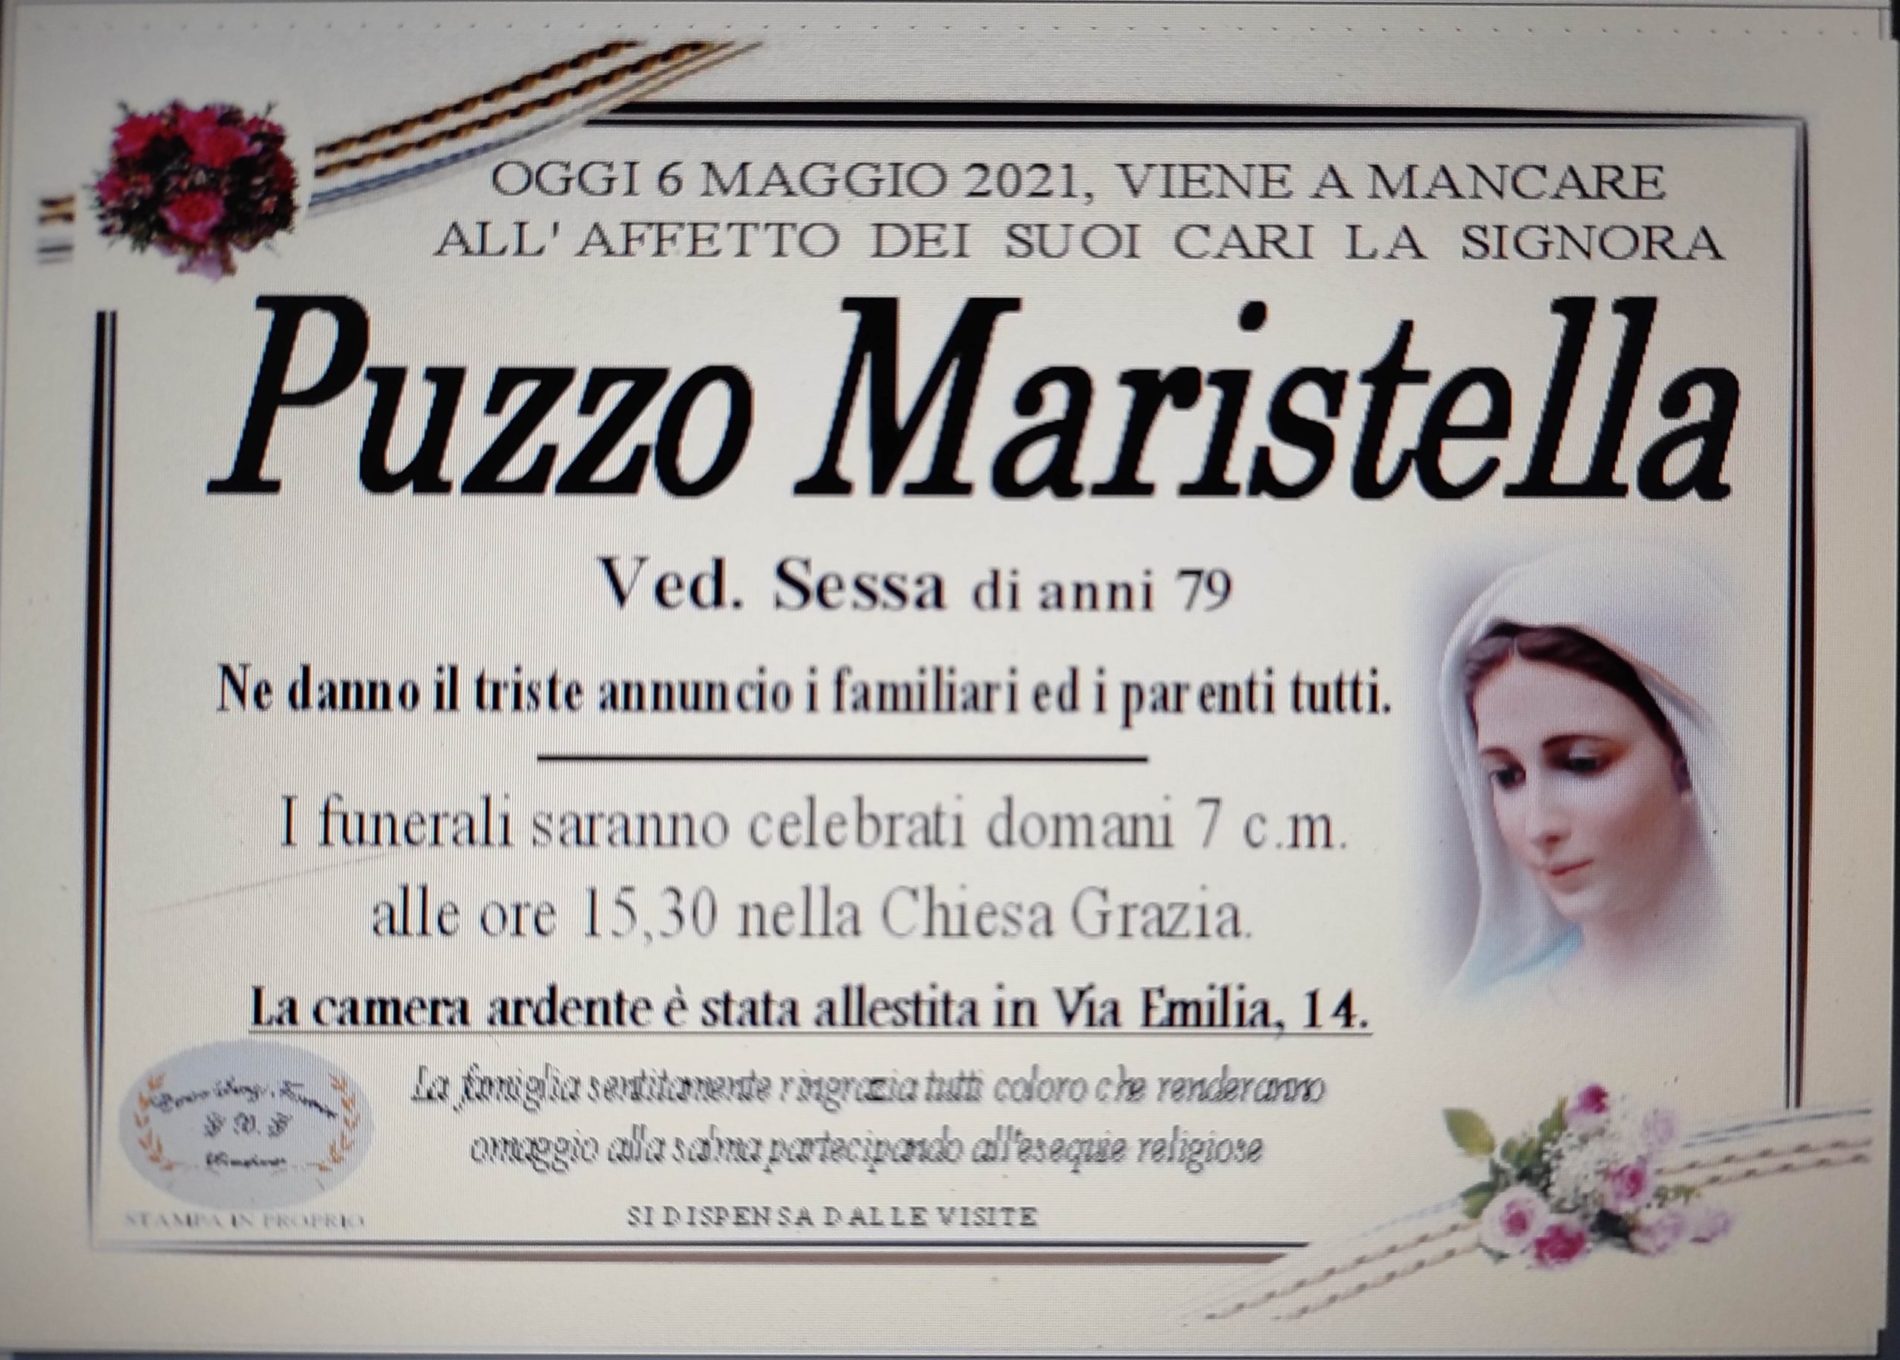 Annuncio servizi funerari agenzia G.B.G. sig.ra Puzzo Maristella ved. Sessa di anni 79